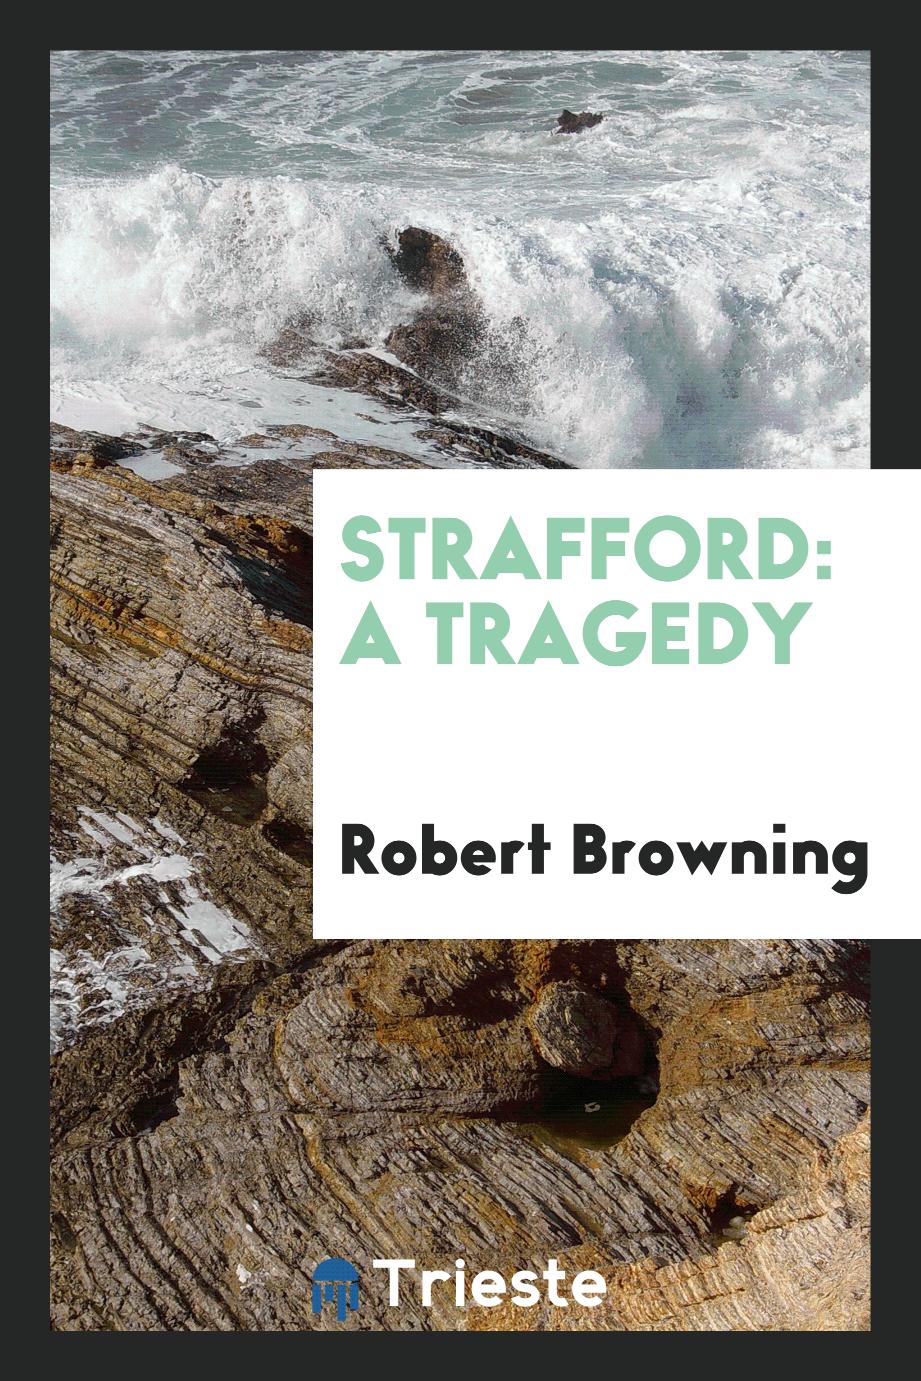 Strafford: A Tragedy